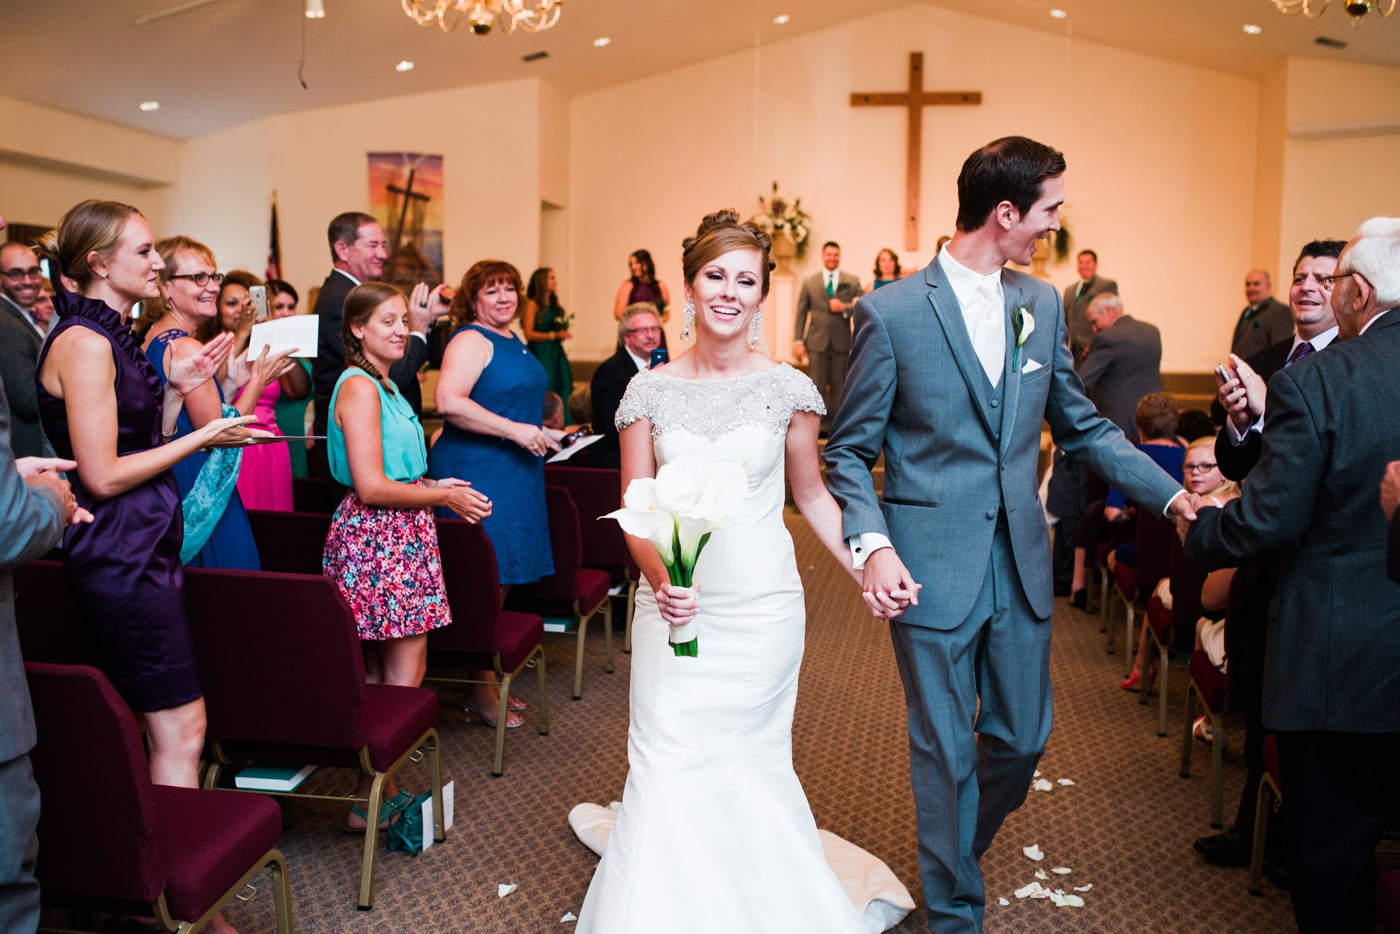 40 - Ceremony Recap - Philadelphia Wedding Photographer - Alison Dunn Photography photo